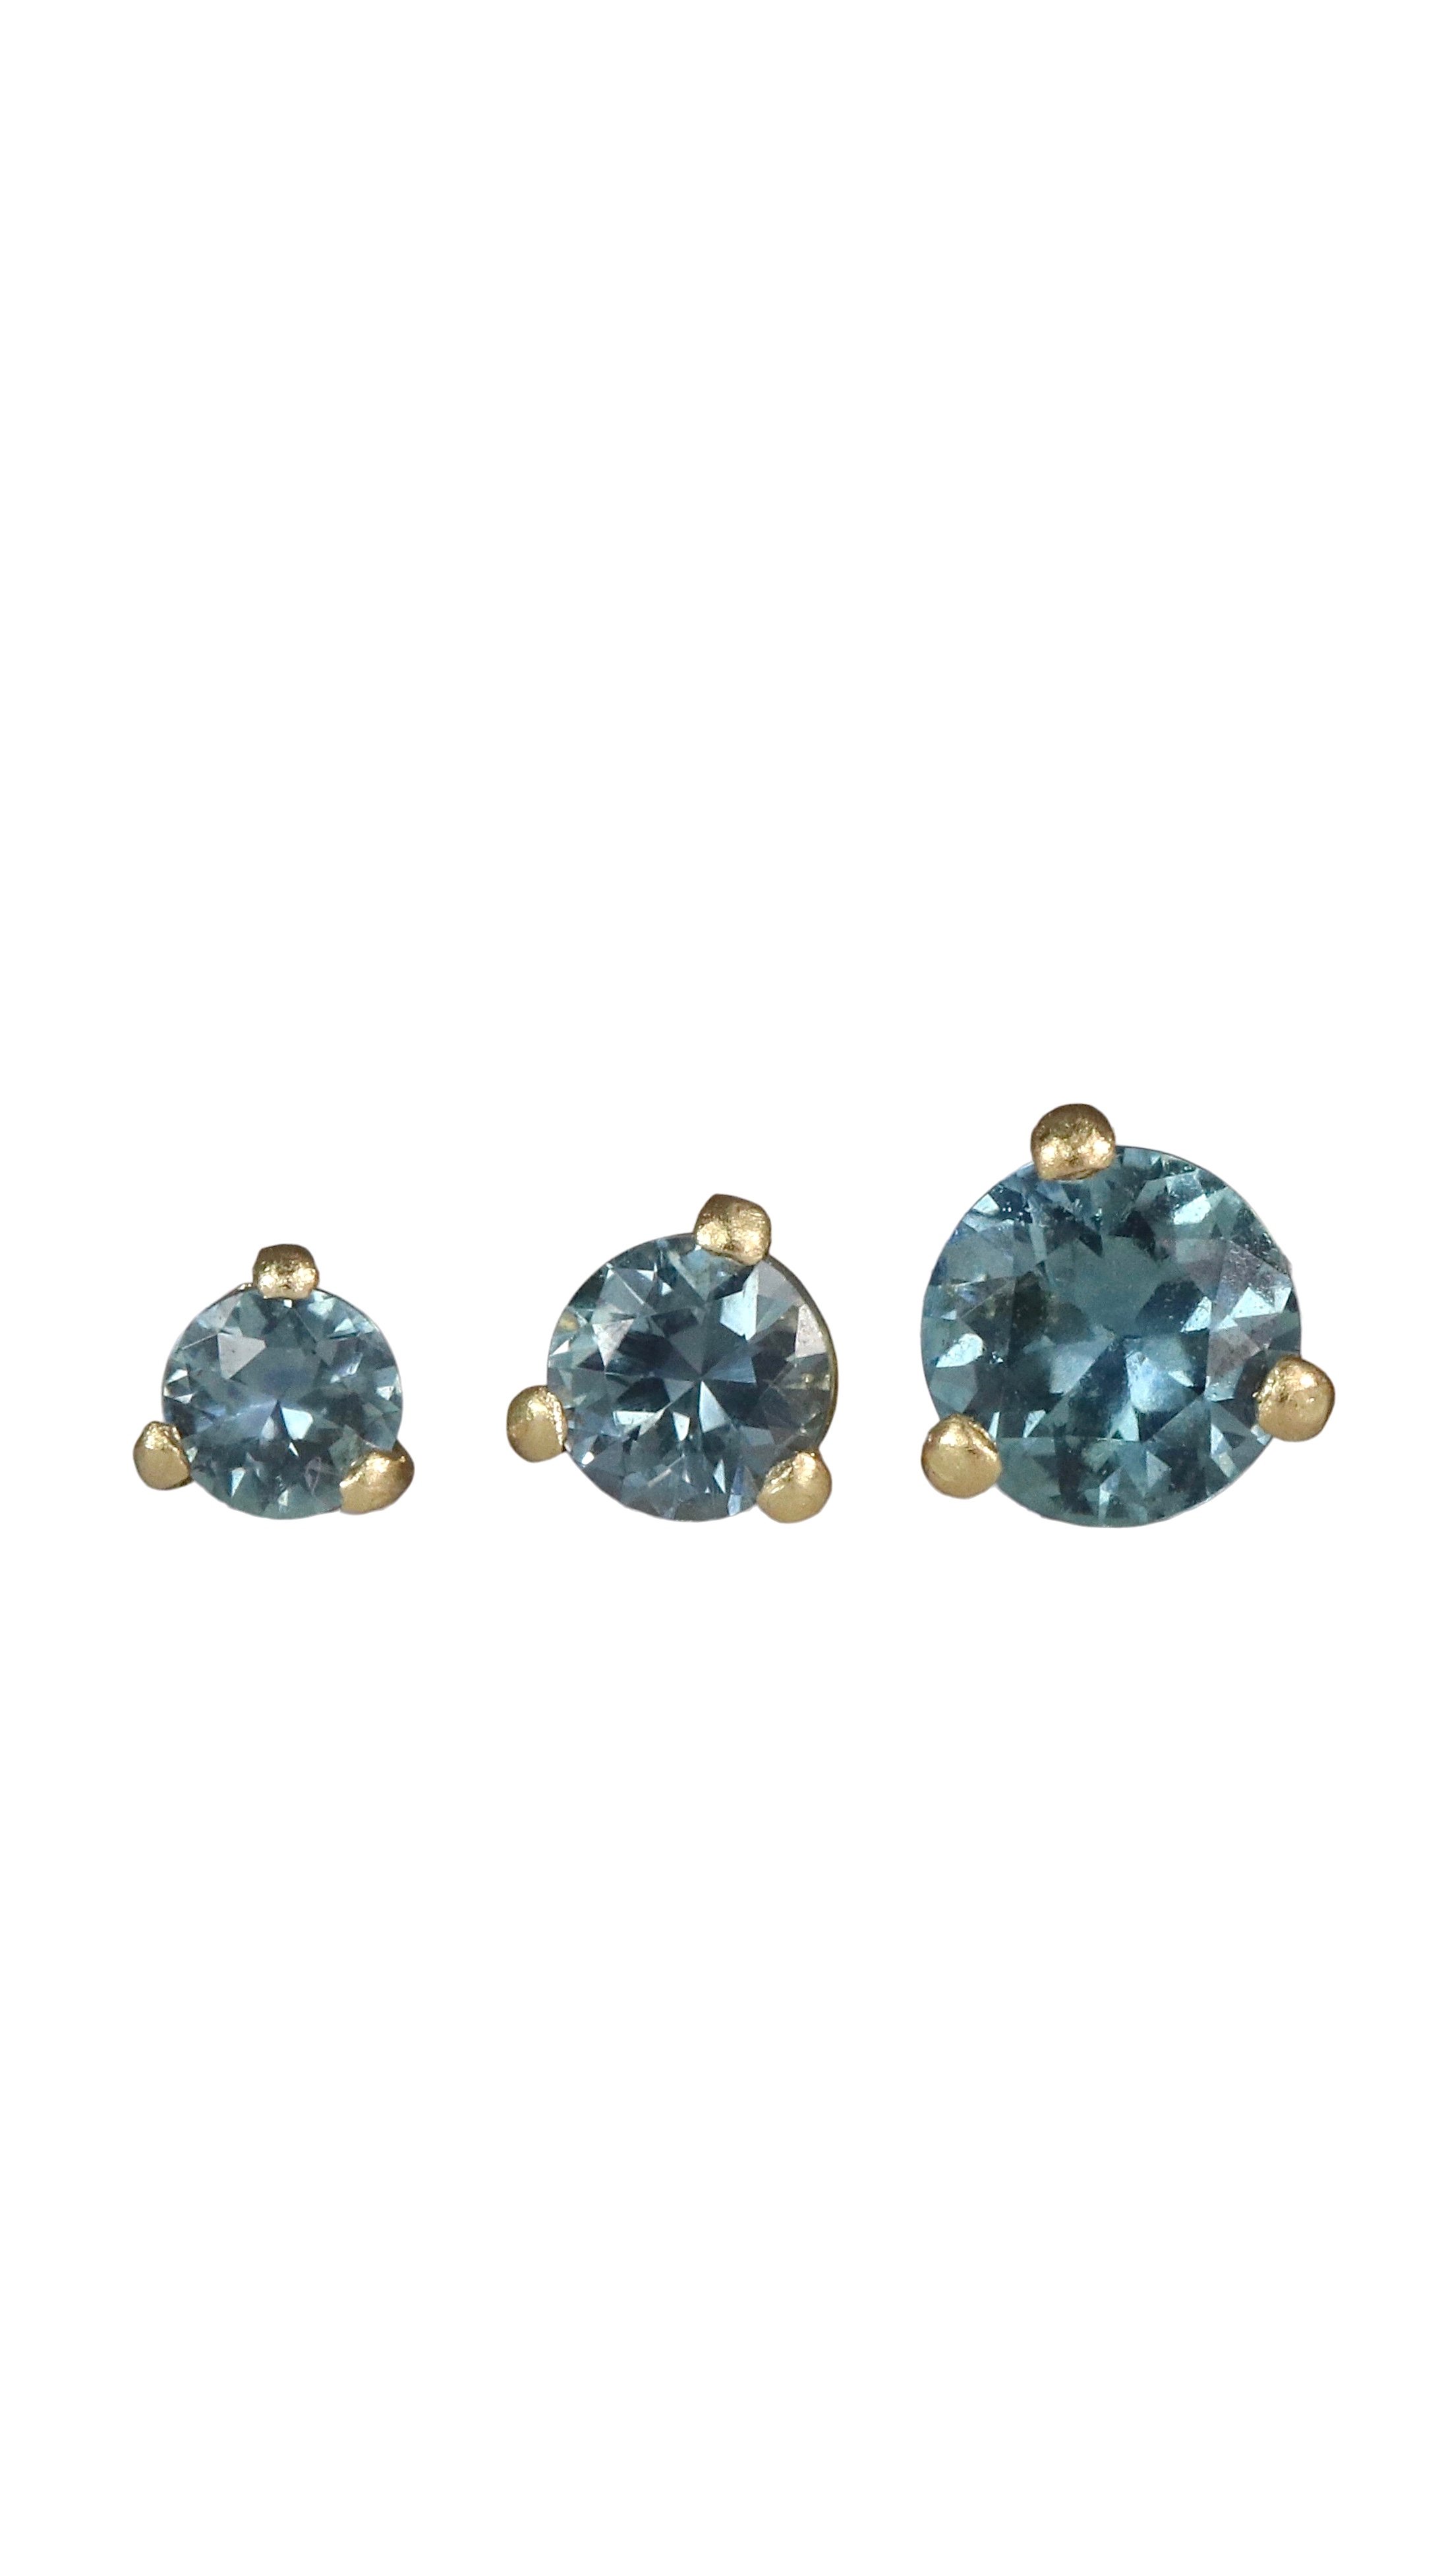 Blue-Green Montana Sapphire & Moissanite Stud Earrings